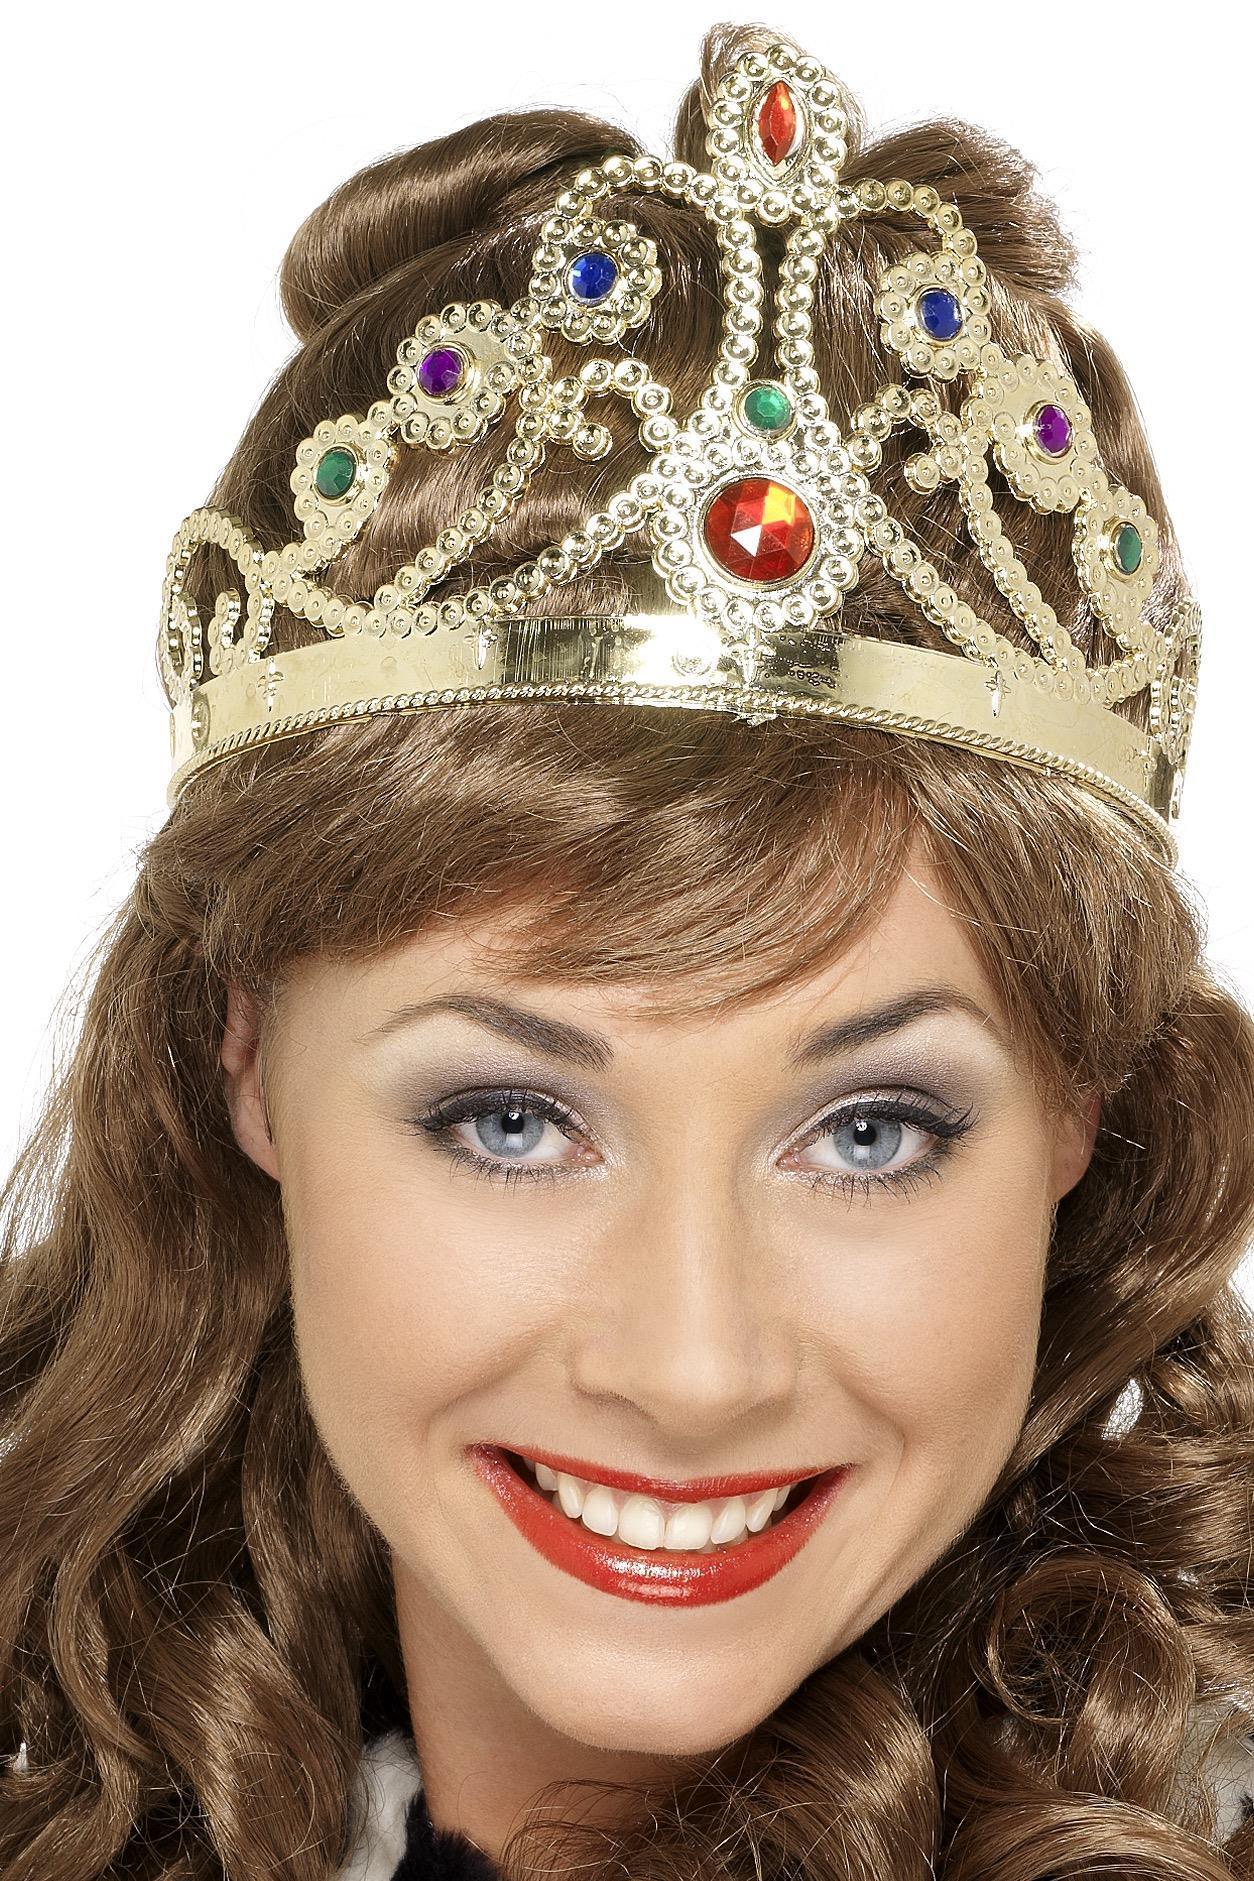 Jewelled Queen's Crown